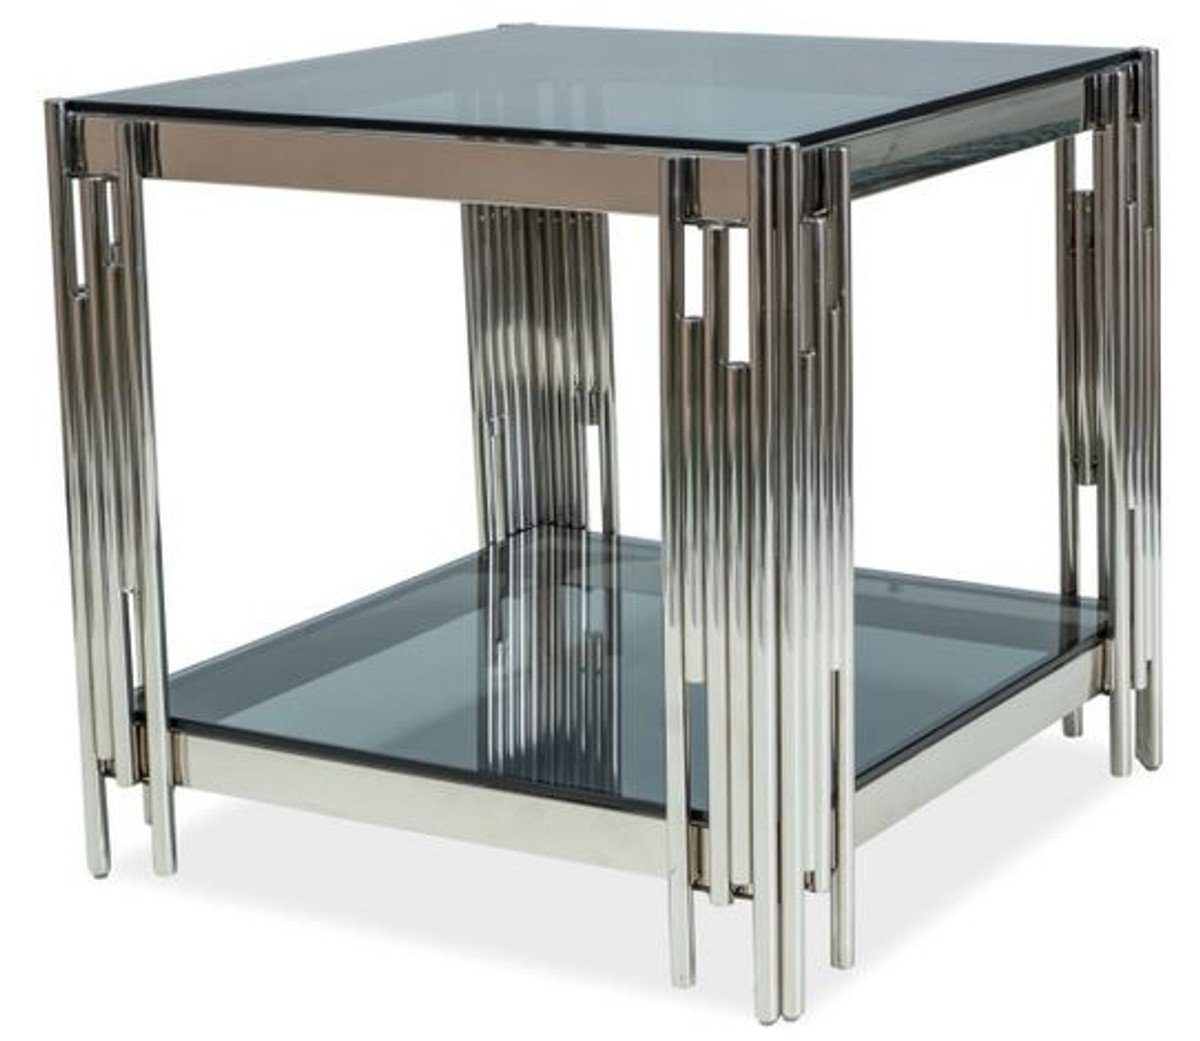 Casa Padrino Beistelltisch Luxus Beistelltisch Silber / Schwarz 55 x 55 x H. 55 cm - Edelstahl Tisch mit getönten Glasplatten - Luxus Möbel